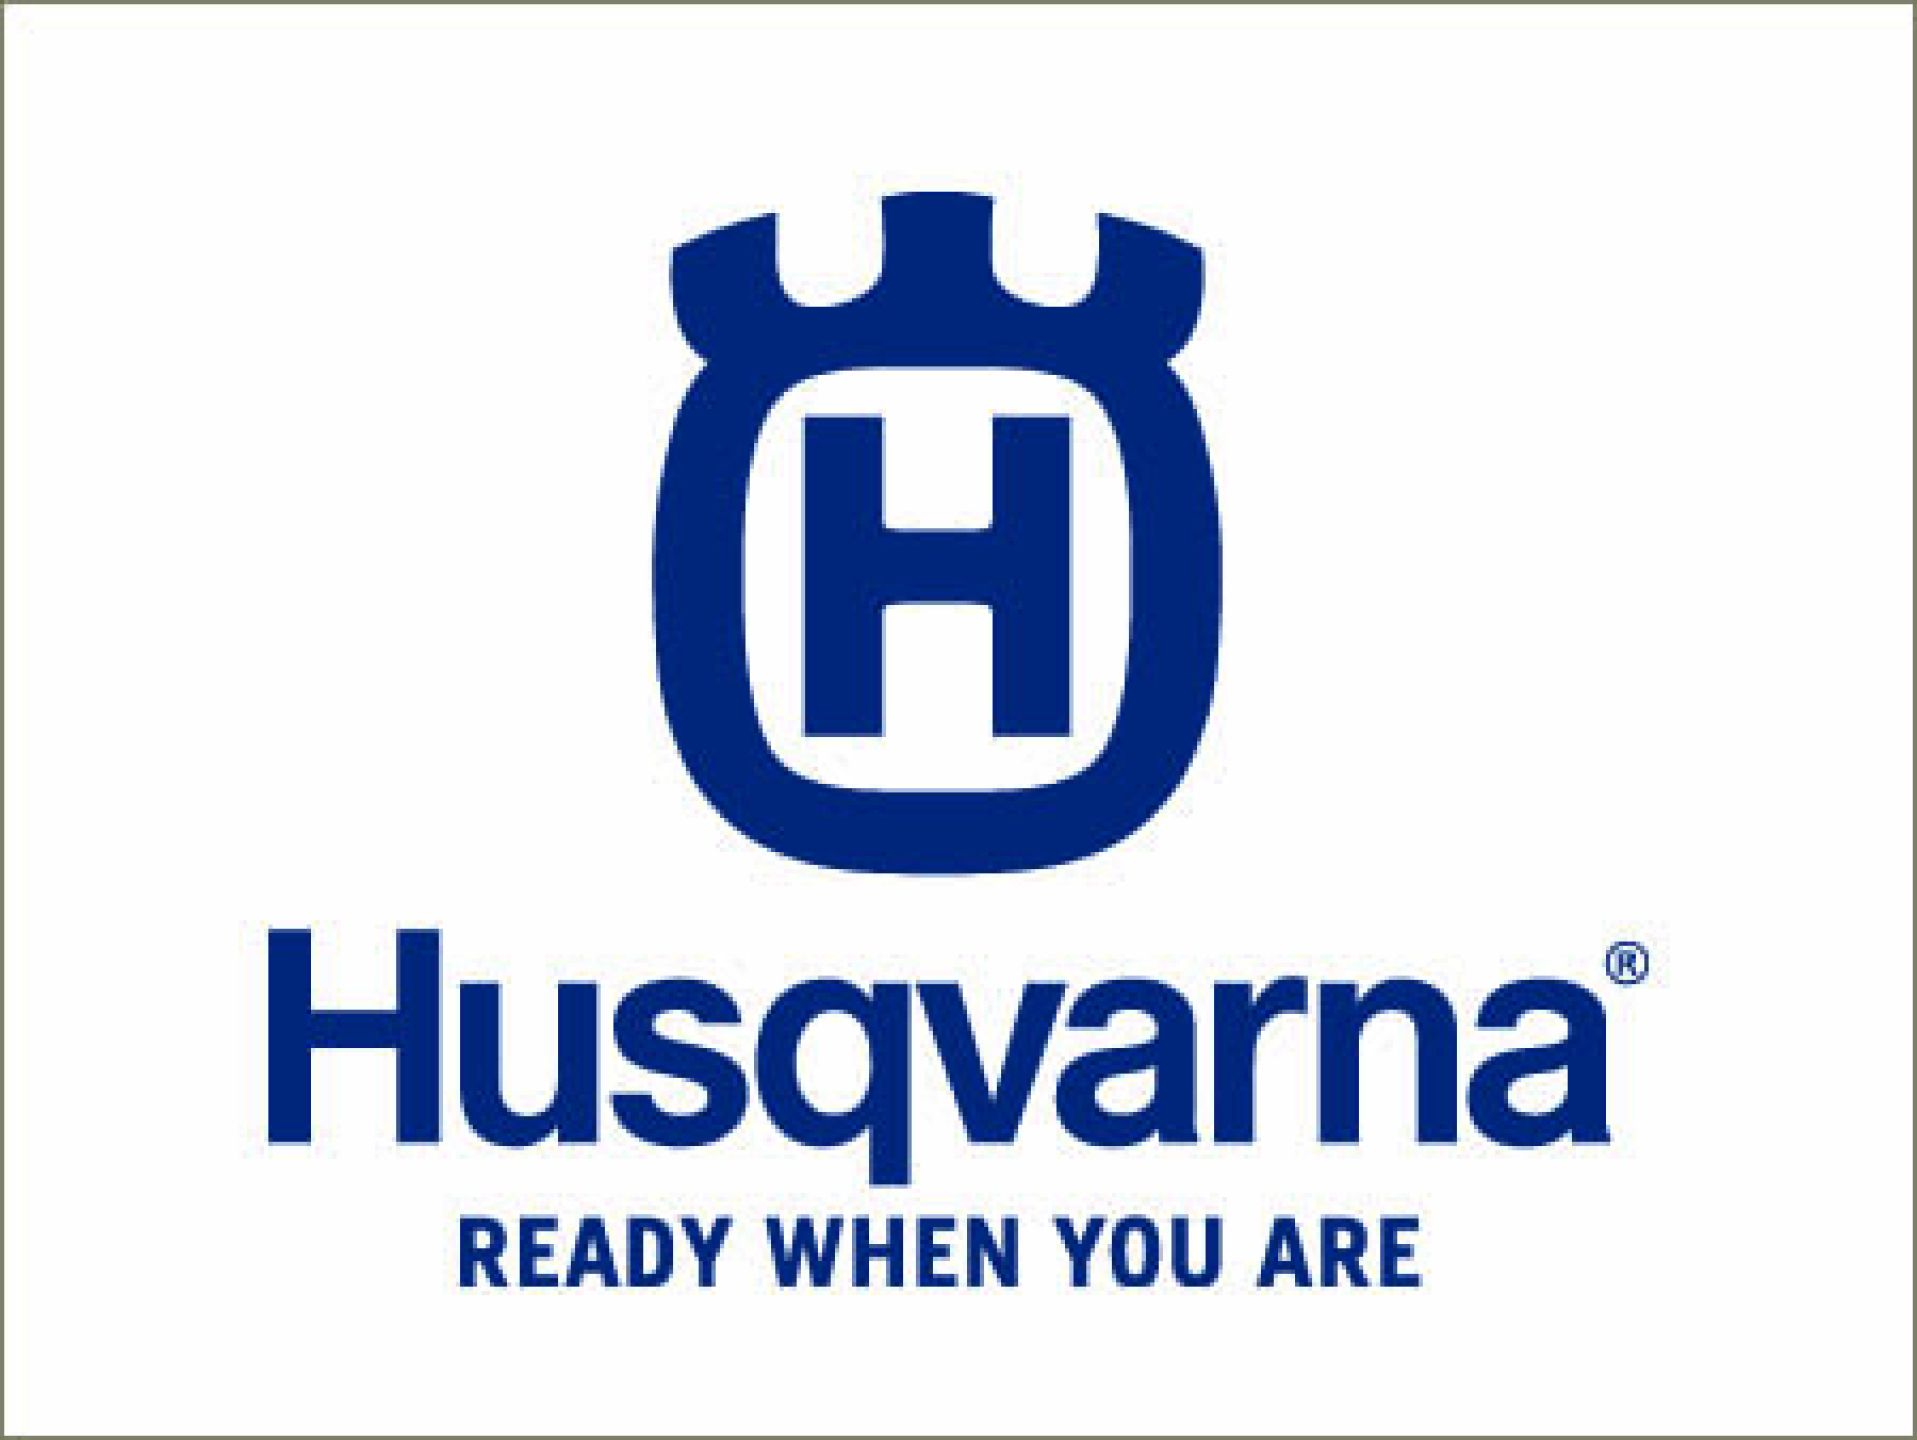 HBH-Baumaschinen-Fachmarkt-HUSQVARNA-05caa776 HBH Baumaschinenhandel - Mieten oder Kaufen